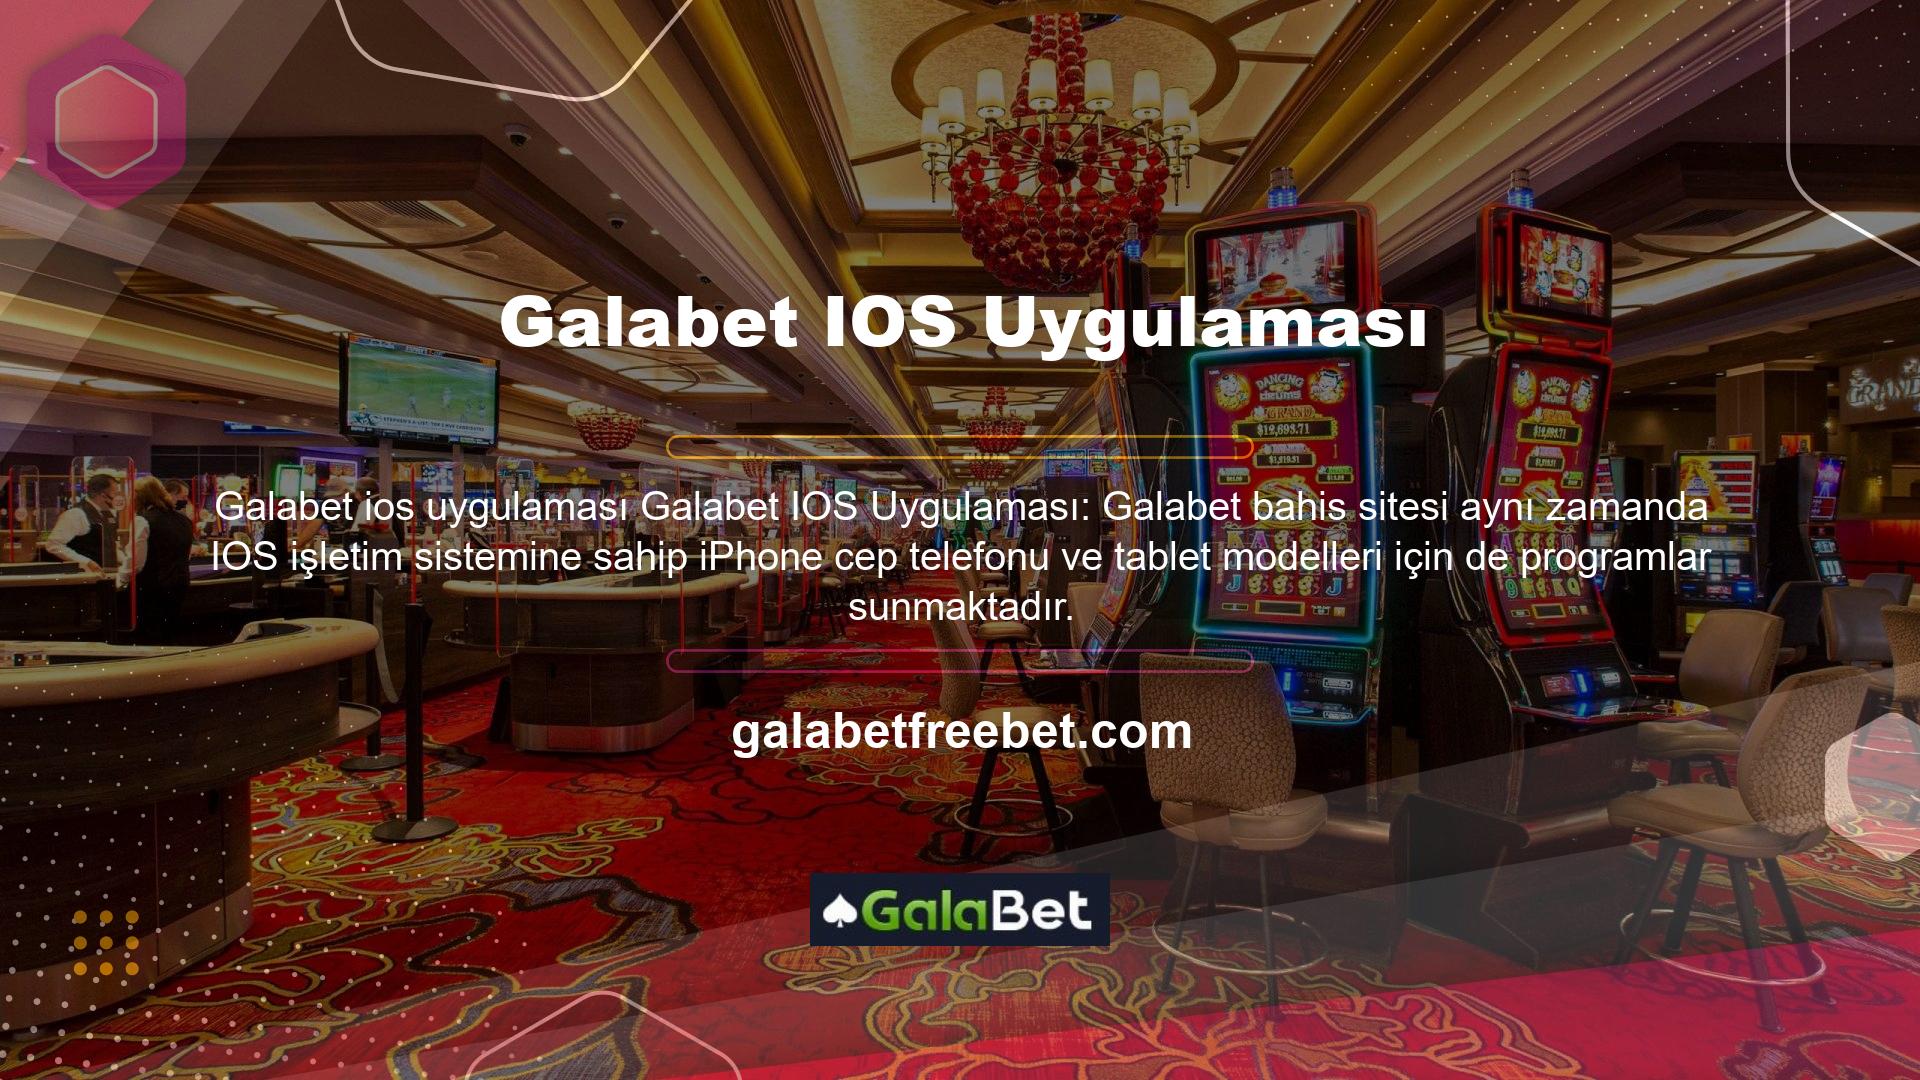 Web sitesinde Galabet Mobil IOS programının ilgili bağlantısına tıklayın